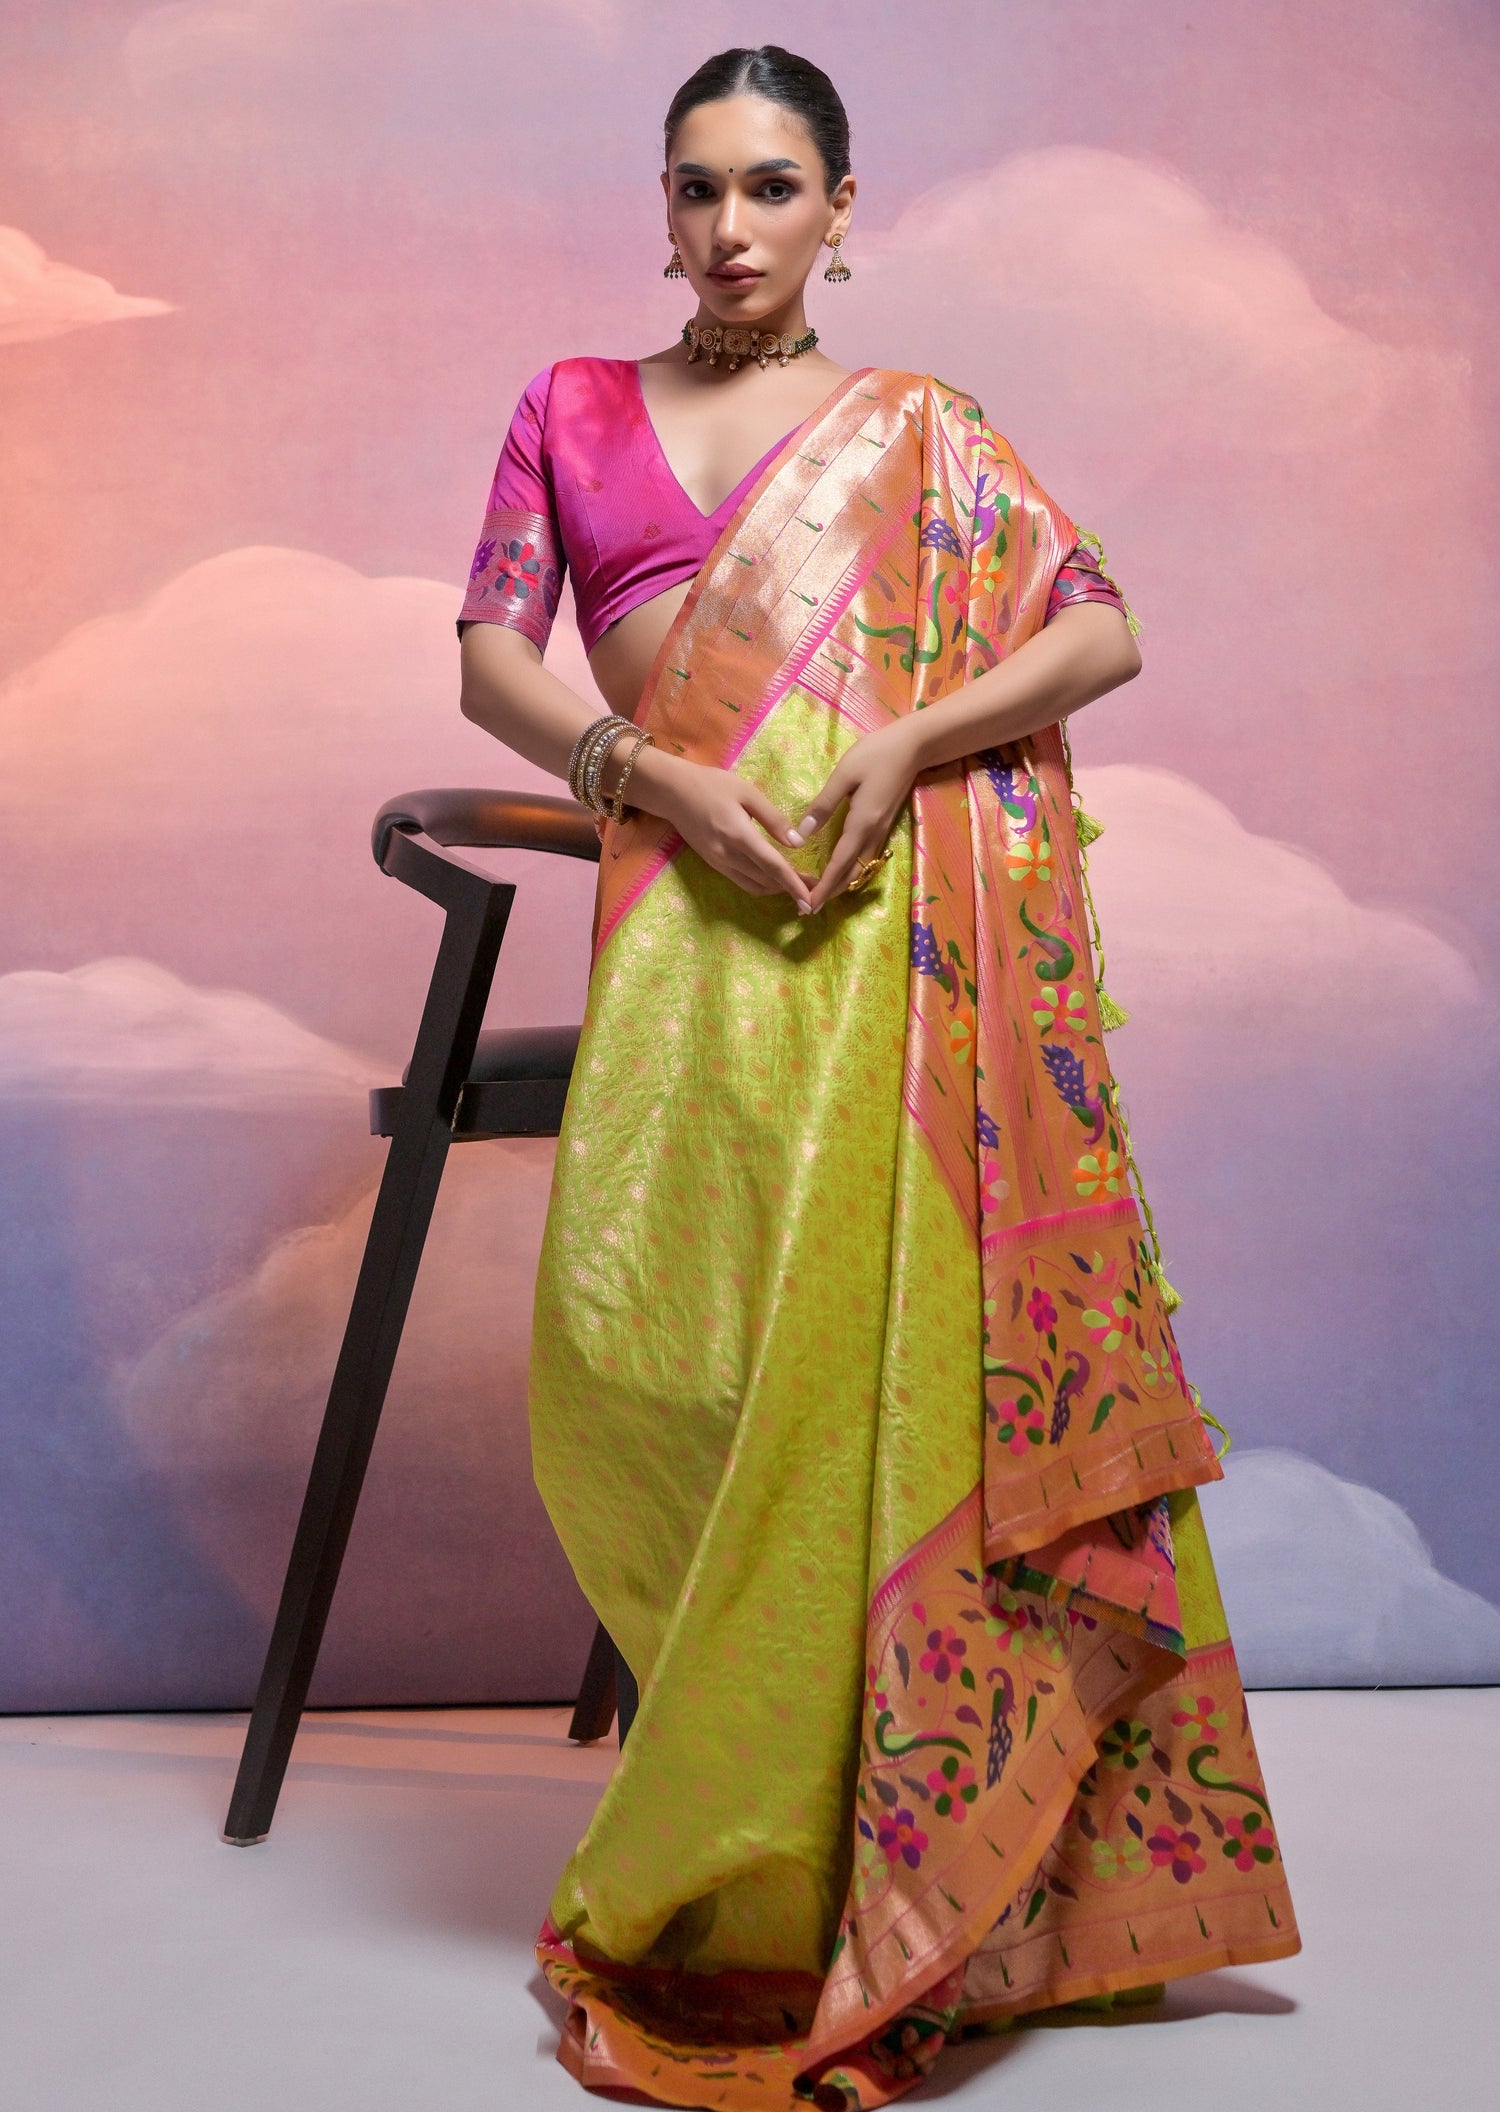 Triple muniya border paithani silk green saree online shopping price.